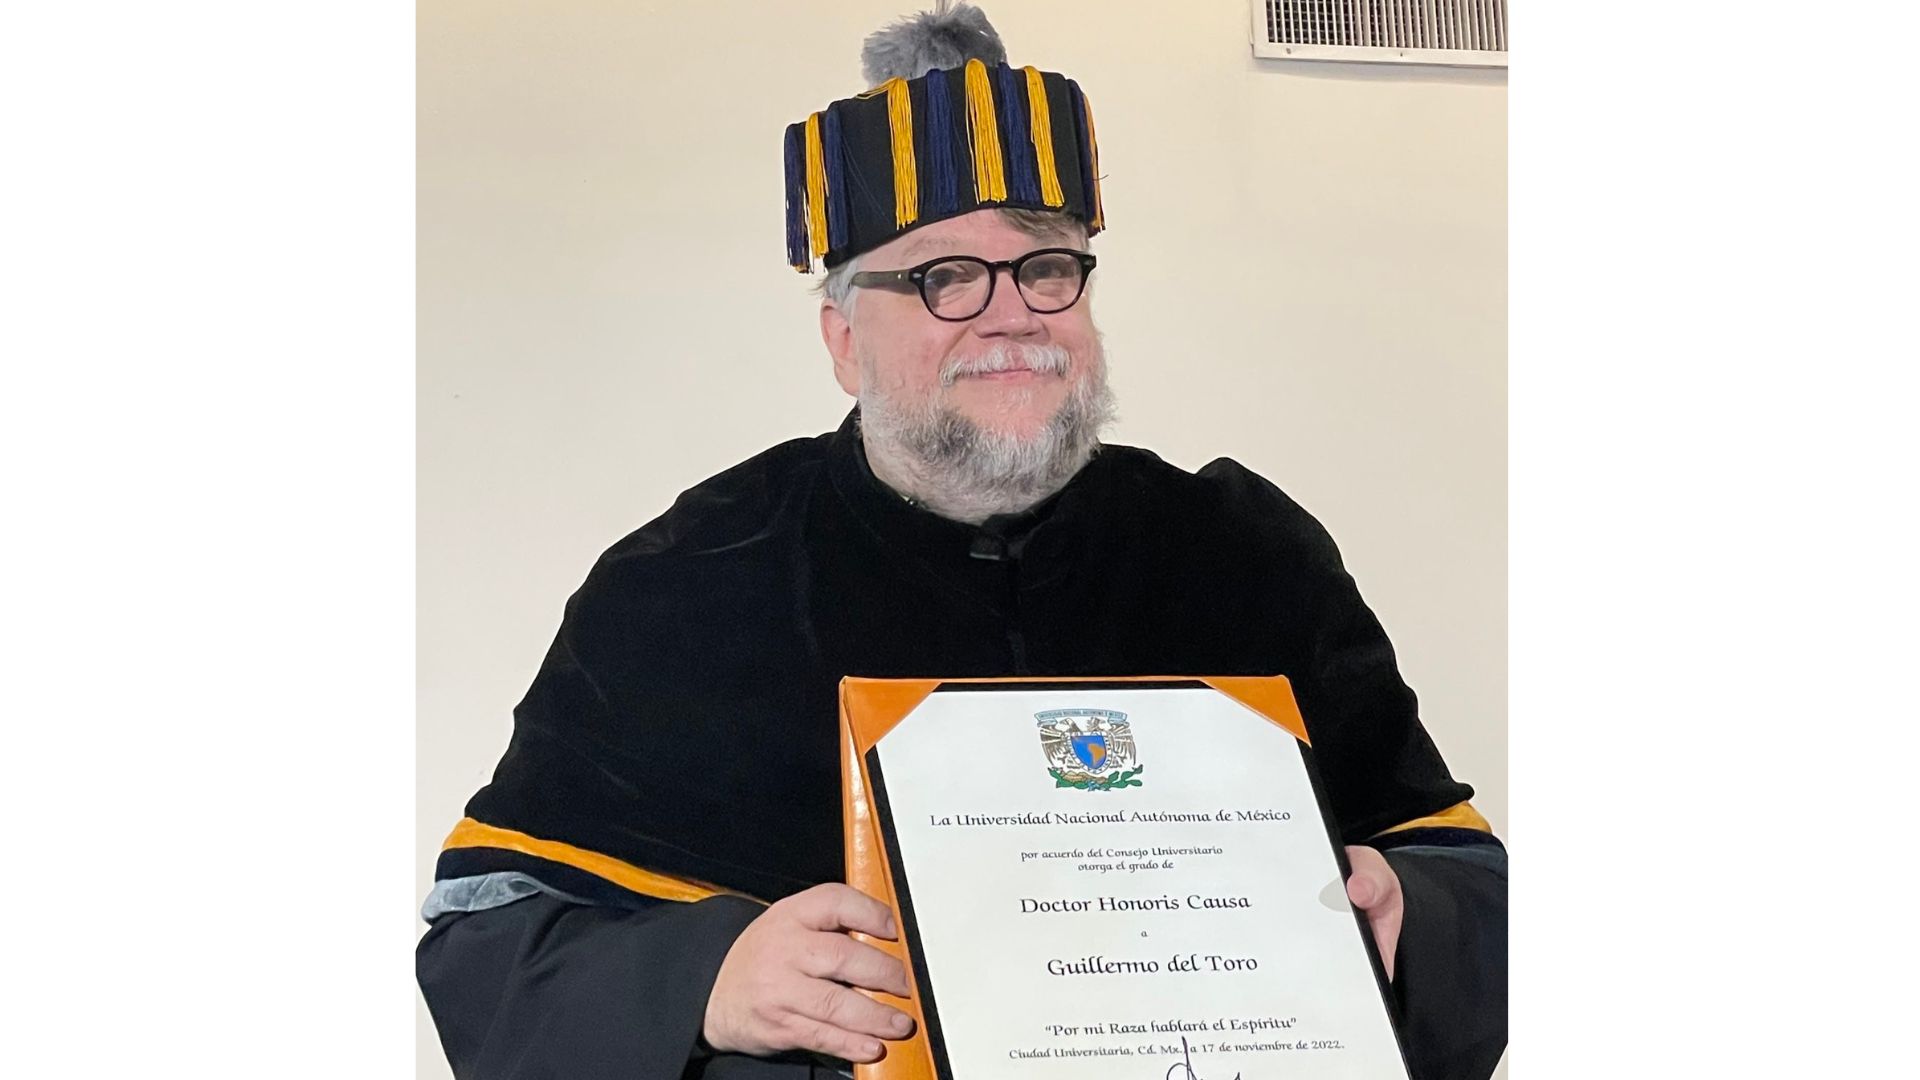 Guillermo del Toro recibe doctorado honoris causa de la UNAM